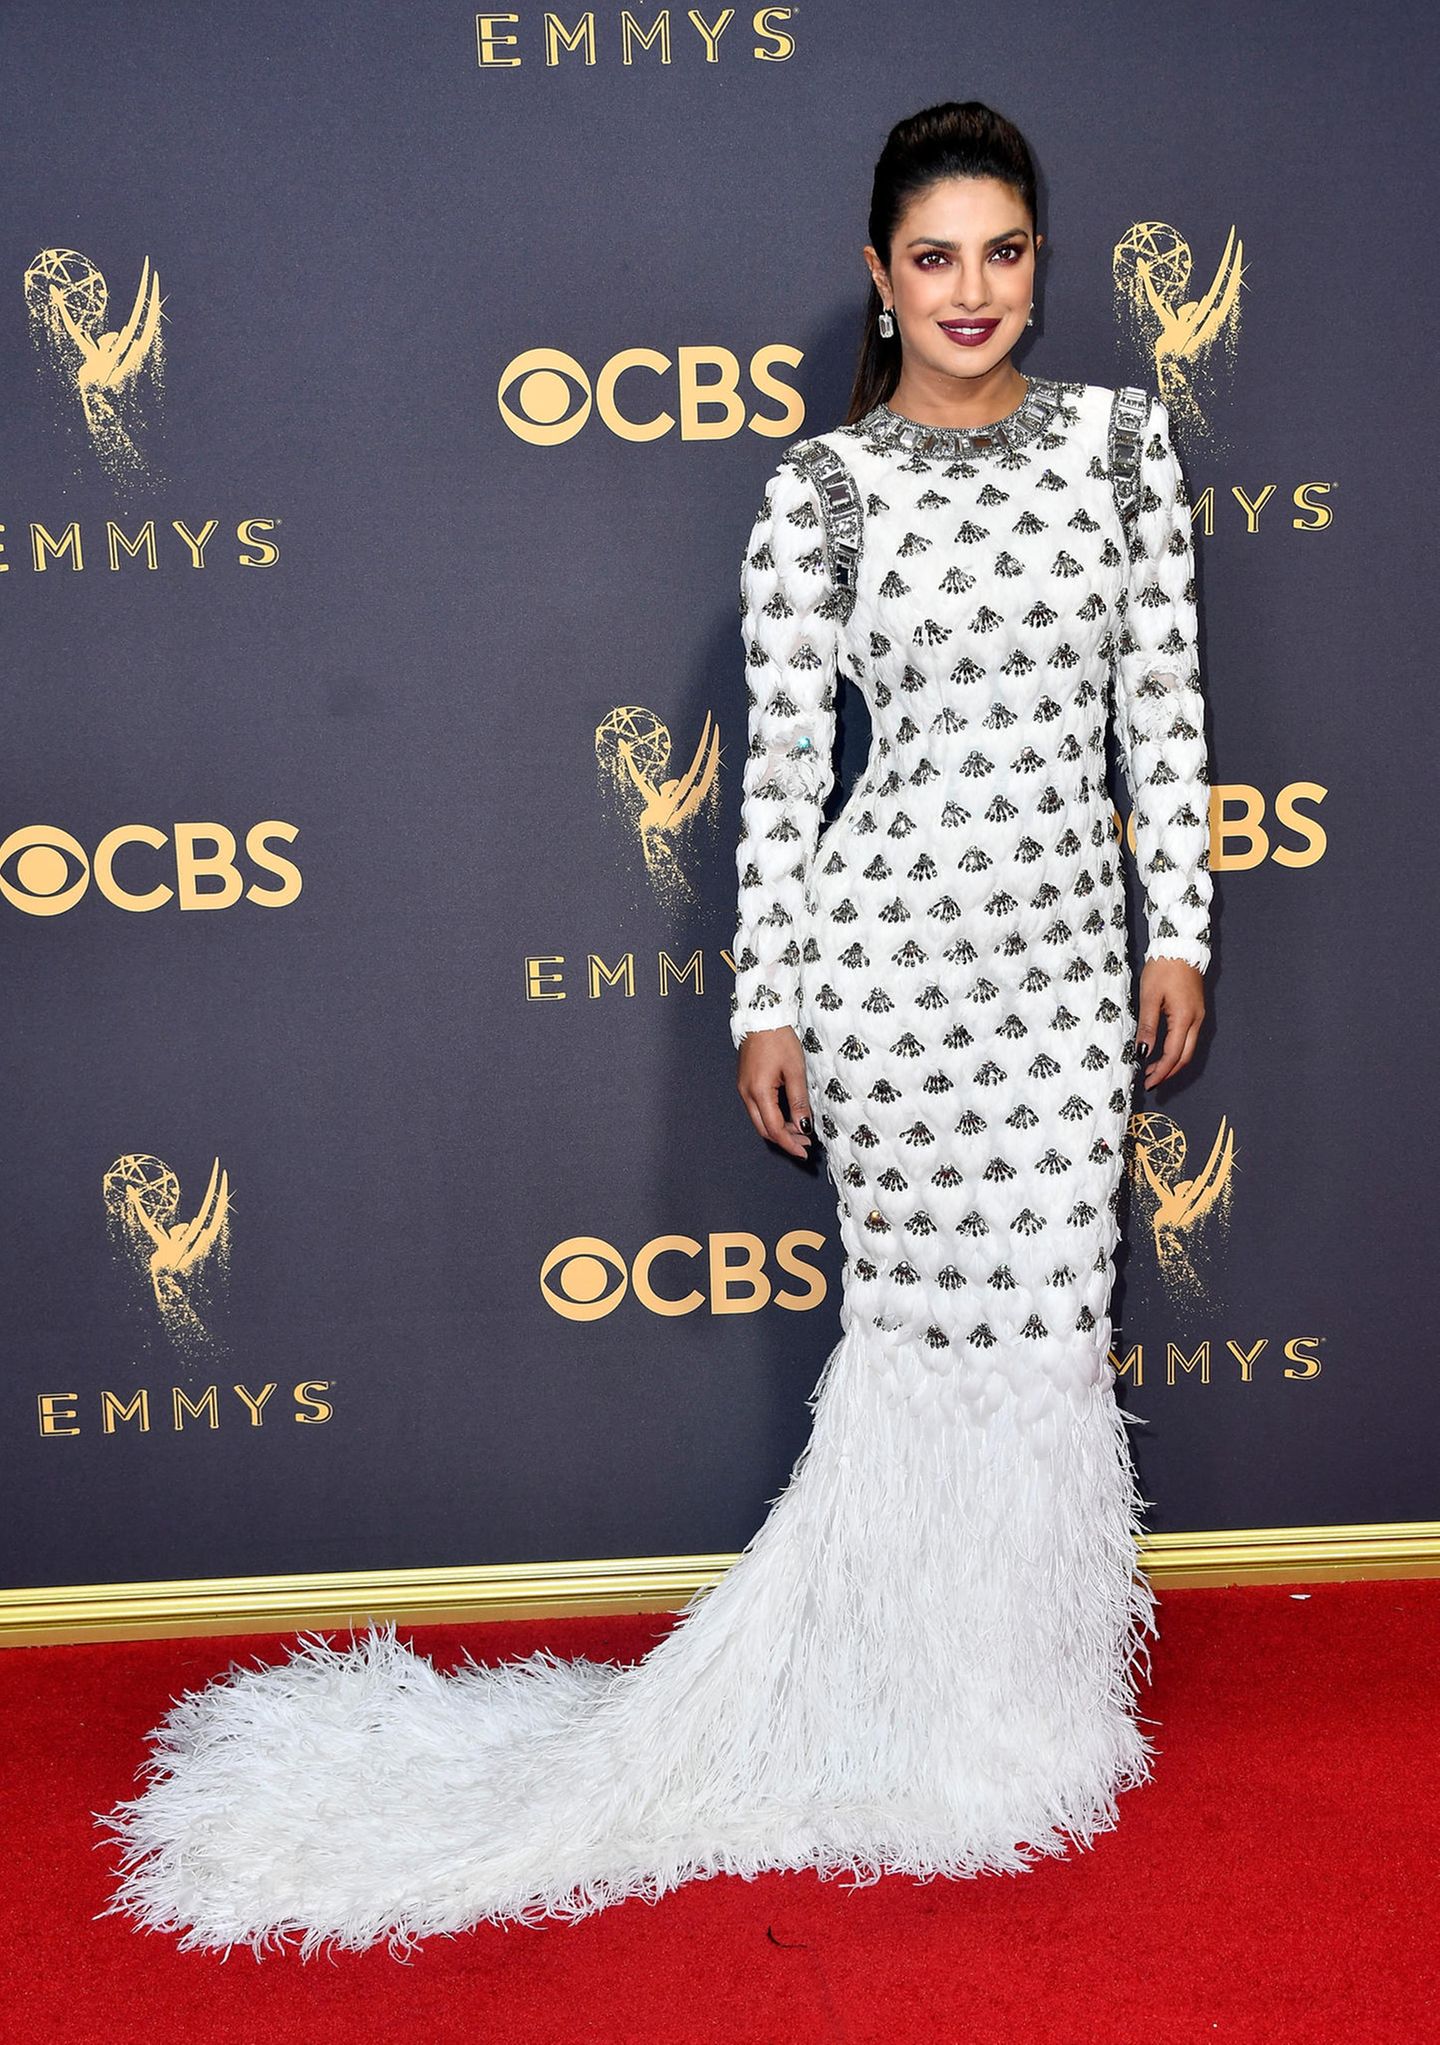 Emmys 2017 mit Priyanka Chopra auf dem Roten Teppich